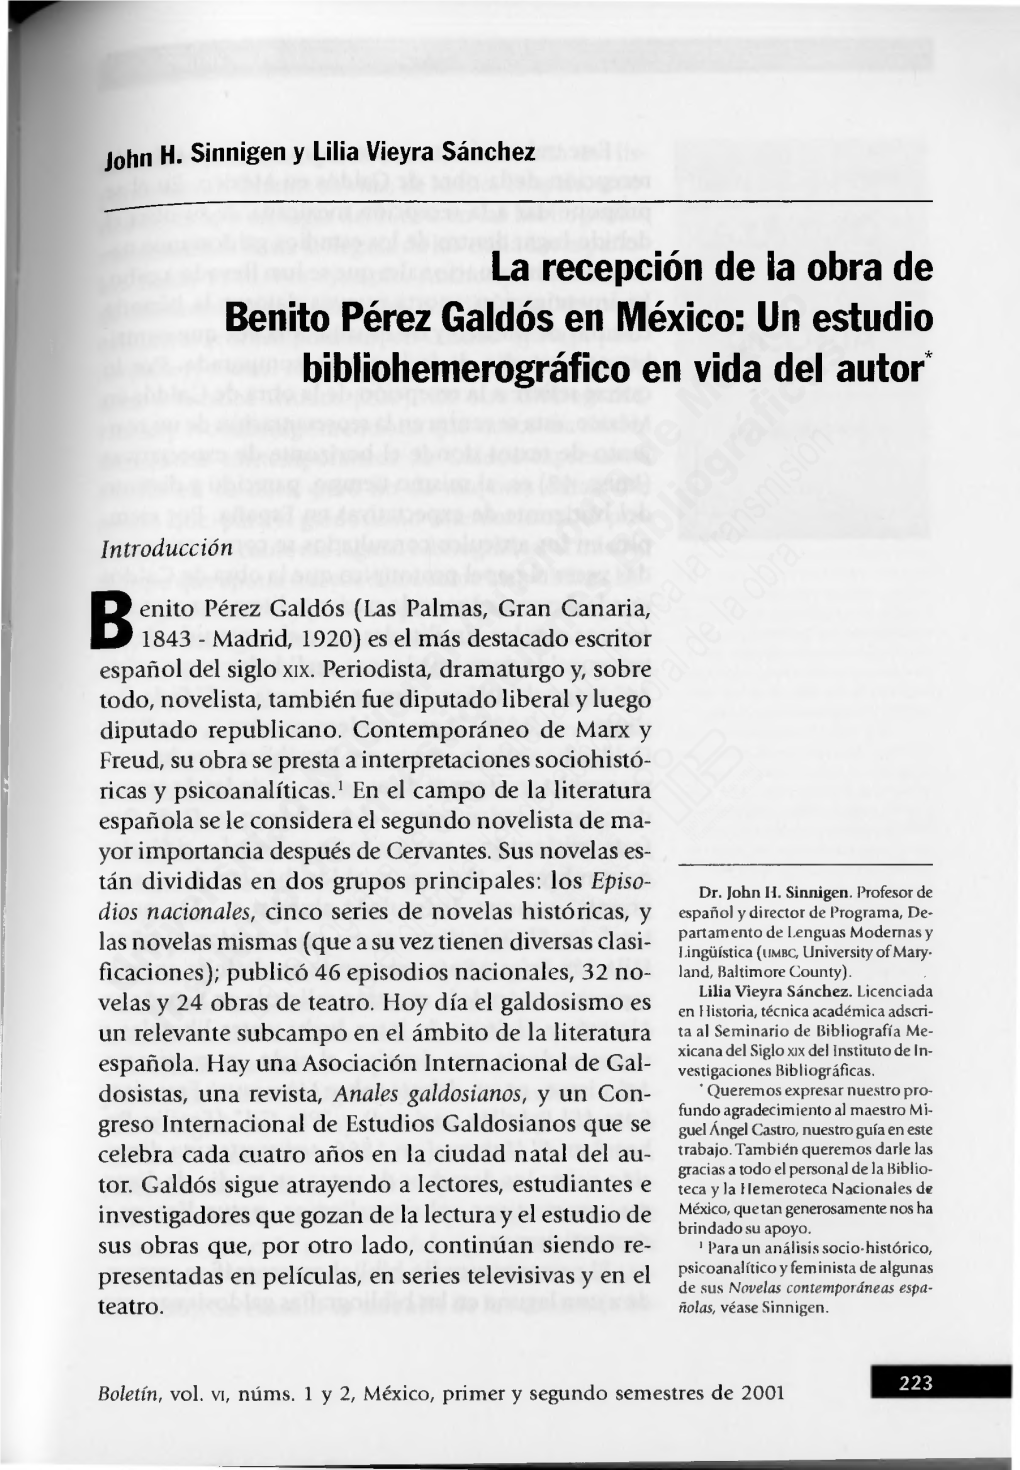 La Recepción De La Obra De Benito Pérez Galdós En México: Un Estudio Bibliohemerográfico En Vida Del Autor*